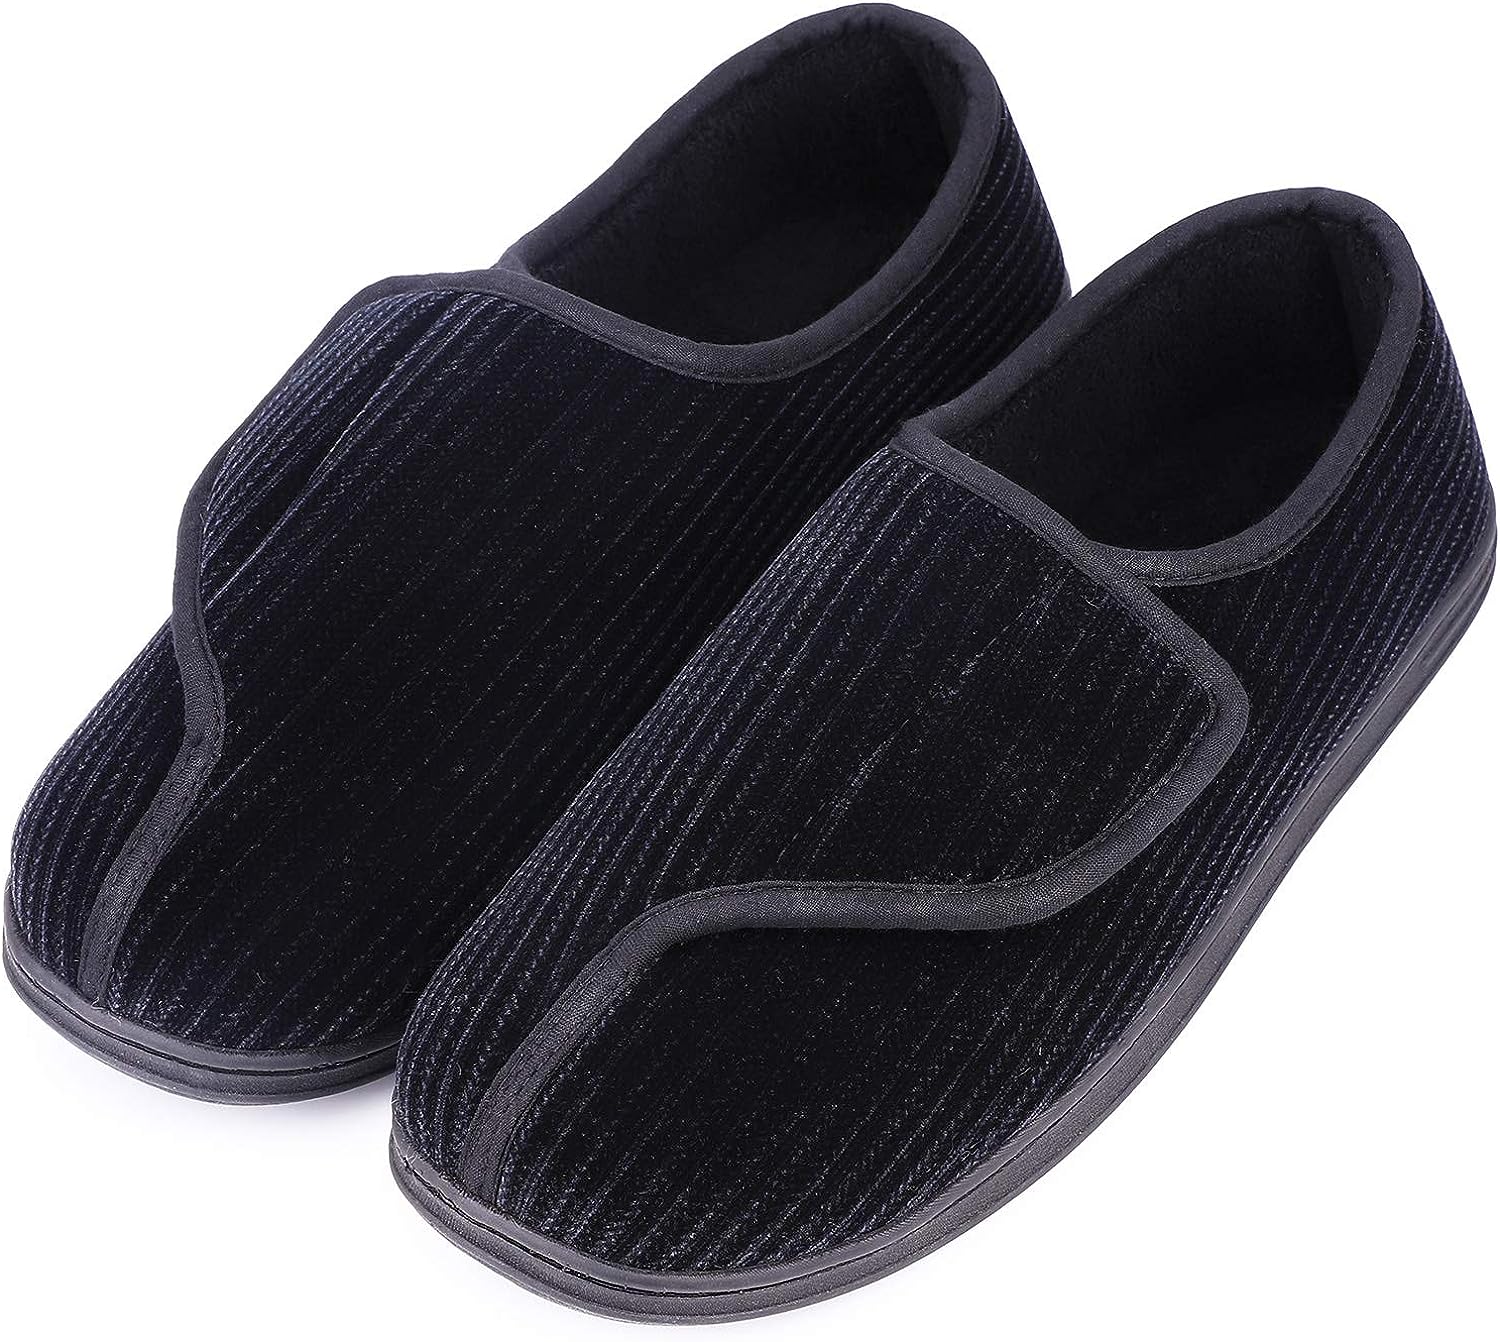 LongBay Men's Memory Foam Diabetic Slippers Comfy Warm [...]